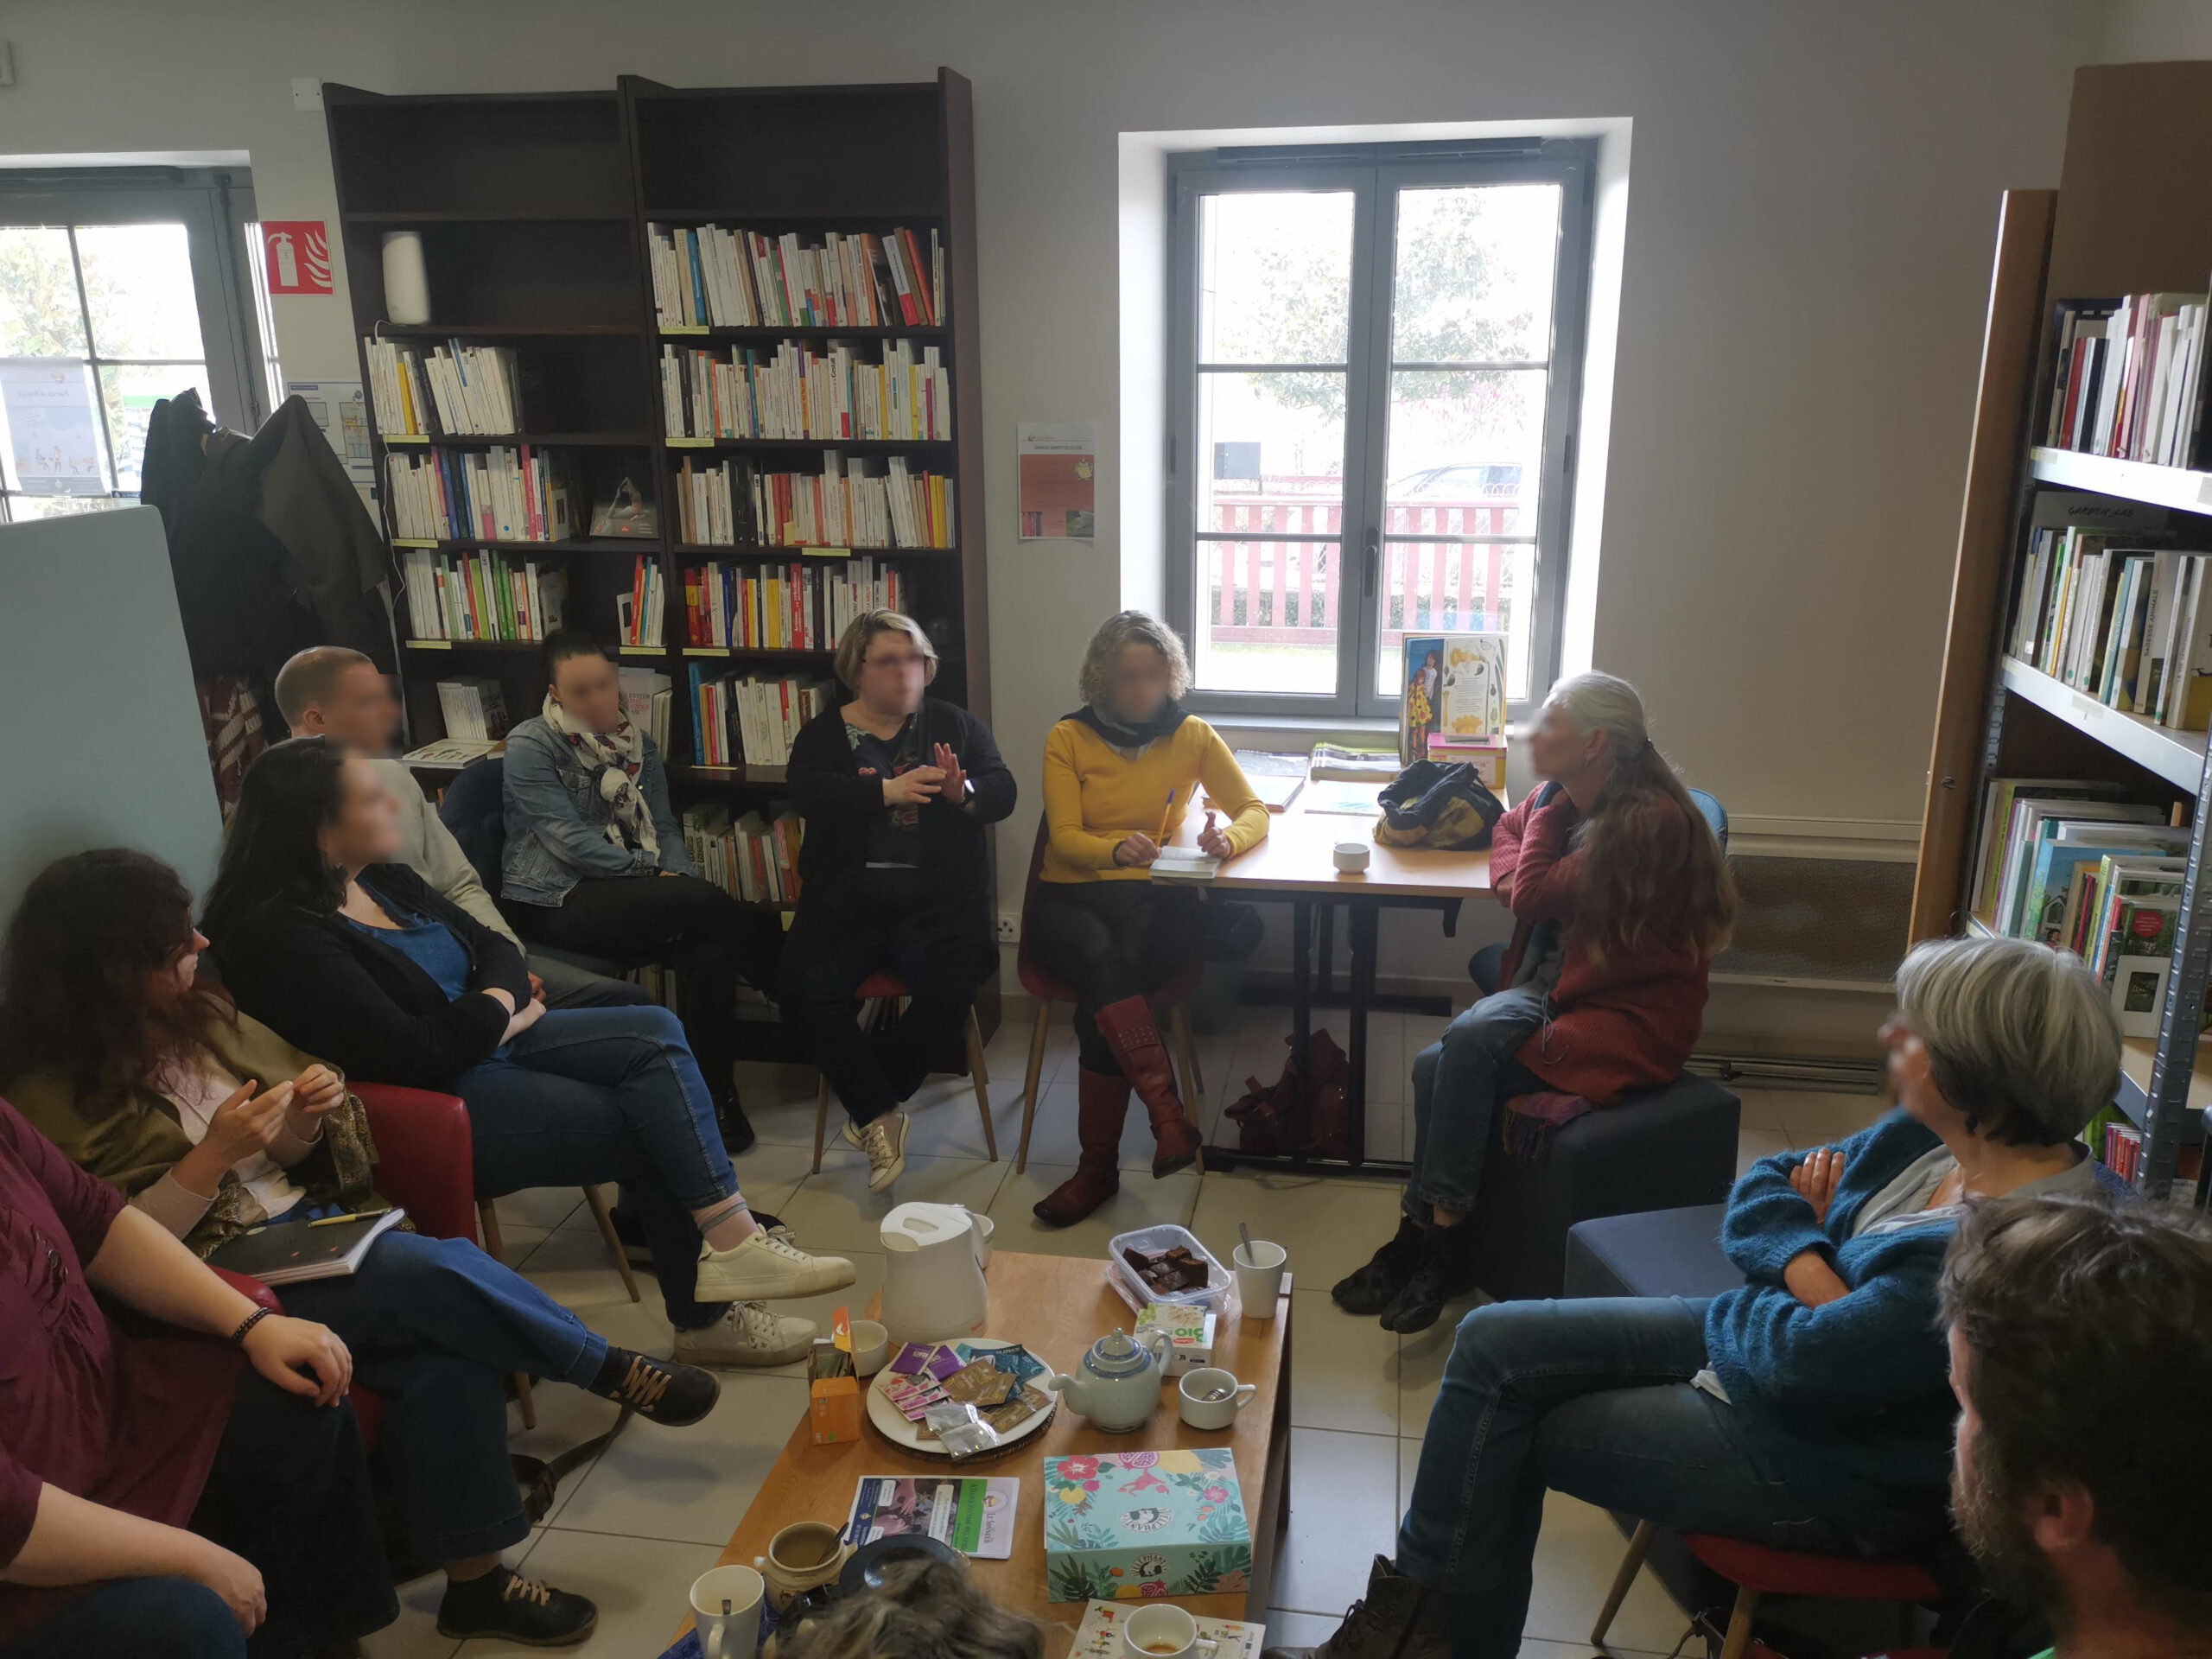 Photo du café des indépendants. 8 personnes autour d'une table avec café et tisanes. En fond des bibliothèques remplies de livres.